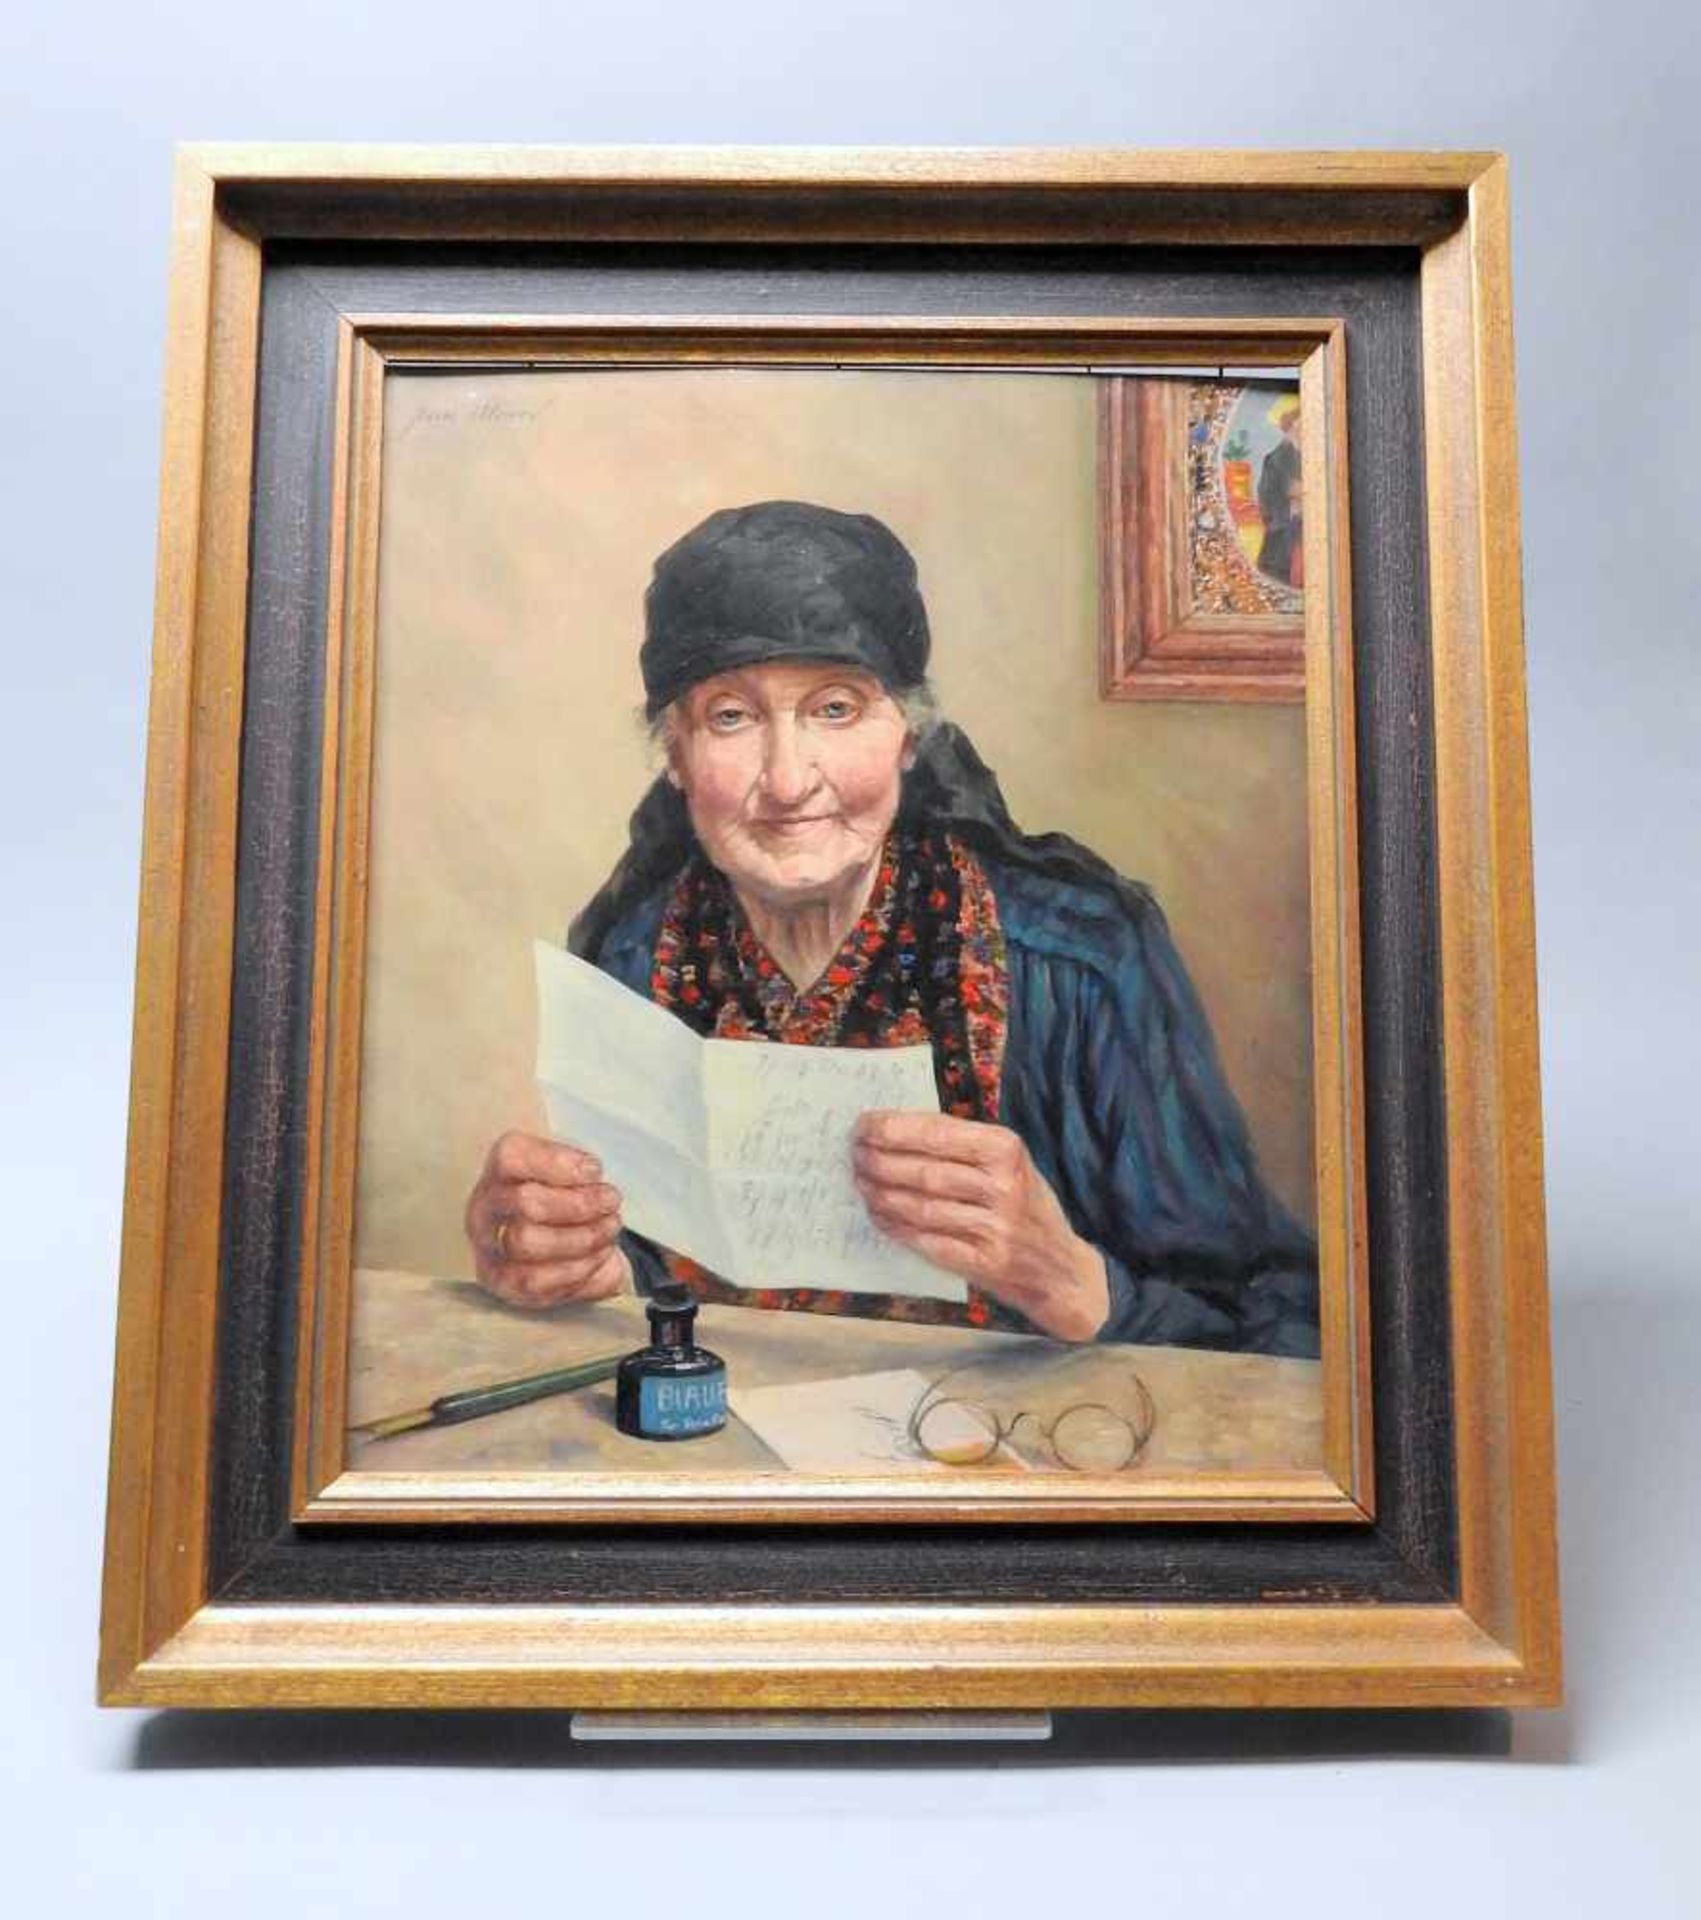 BriefschreiberinÖl/Holz. Dargestellt ist eine alte Frau in einem farbenprächtigen Ge - Bild 5 aus 6